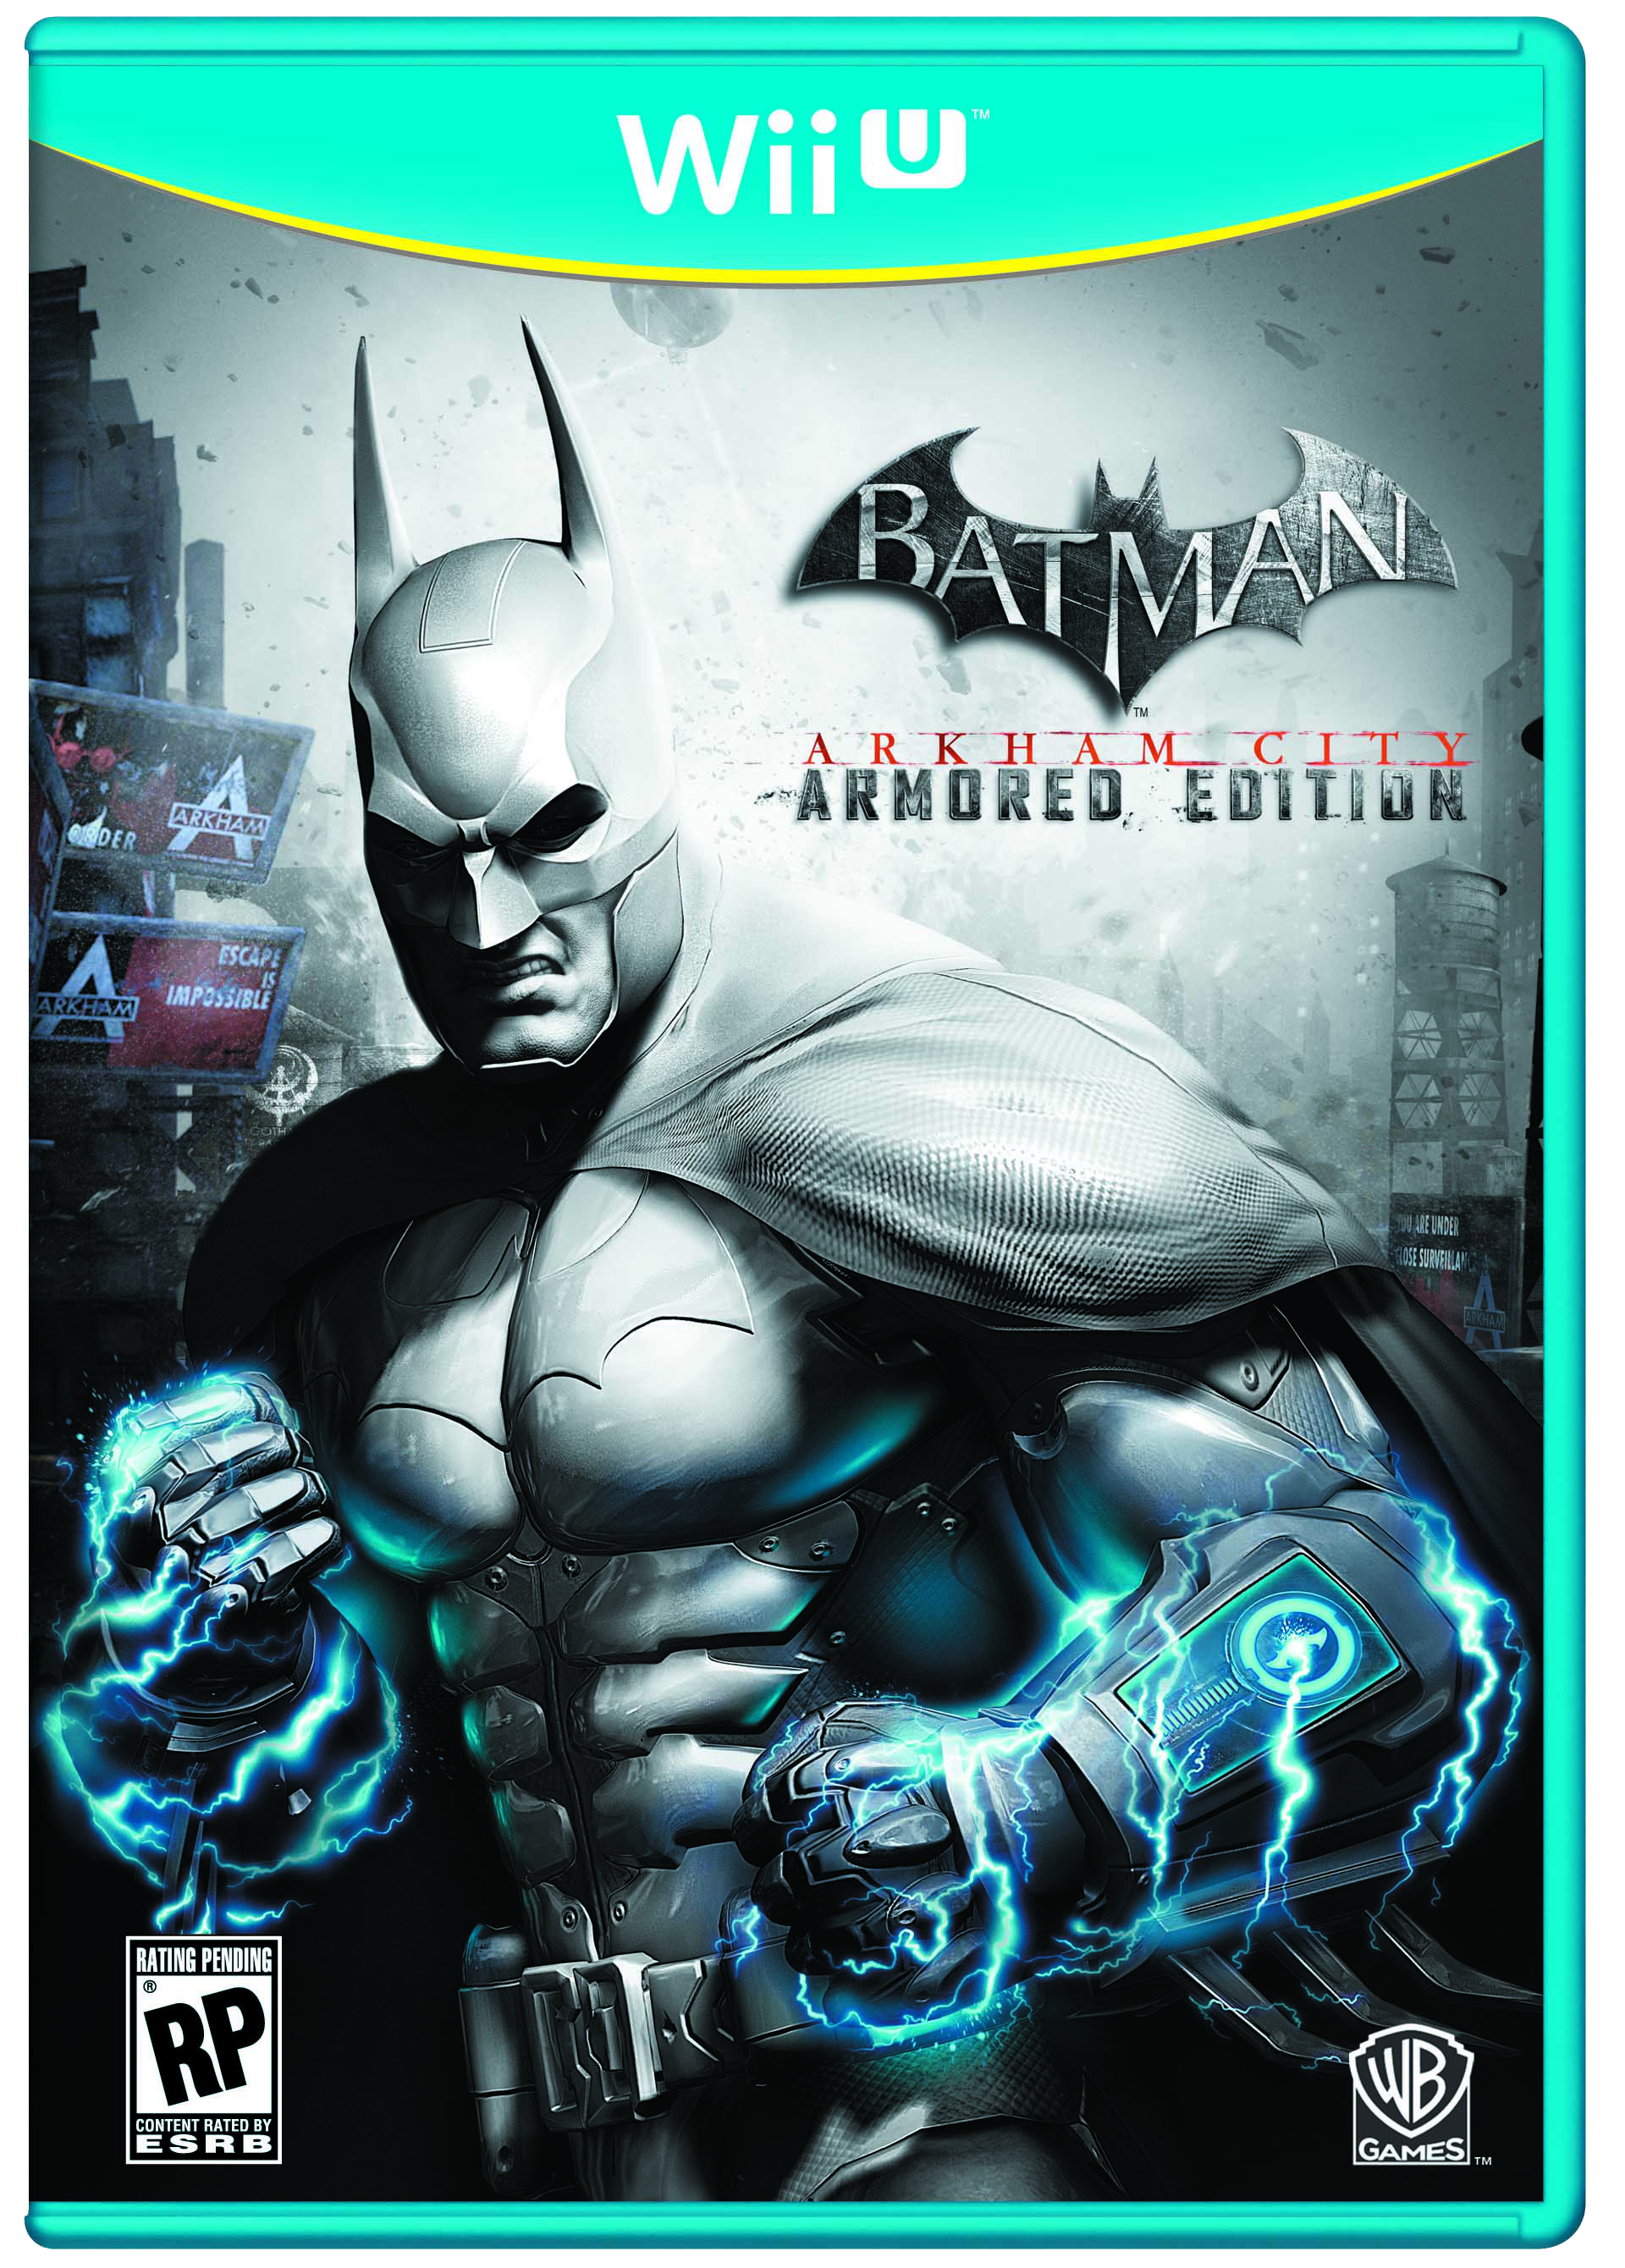 Nice Images Collection: Batman: Arkham City Desktop Wallpapers